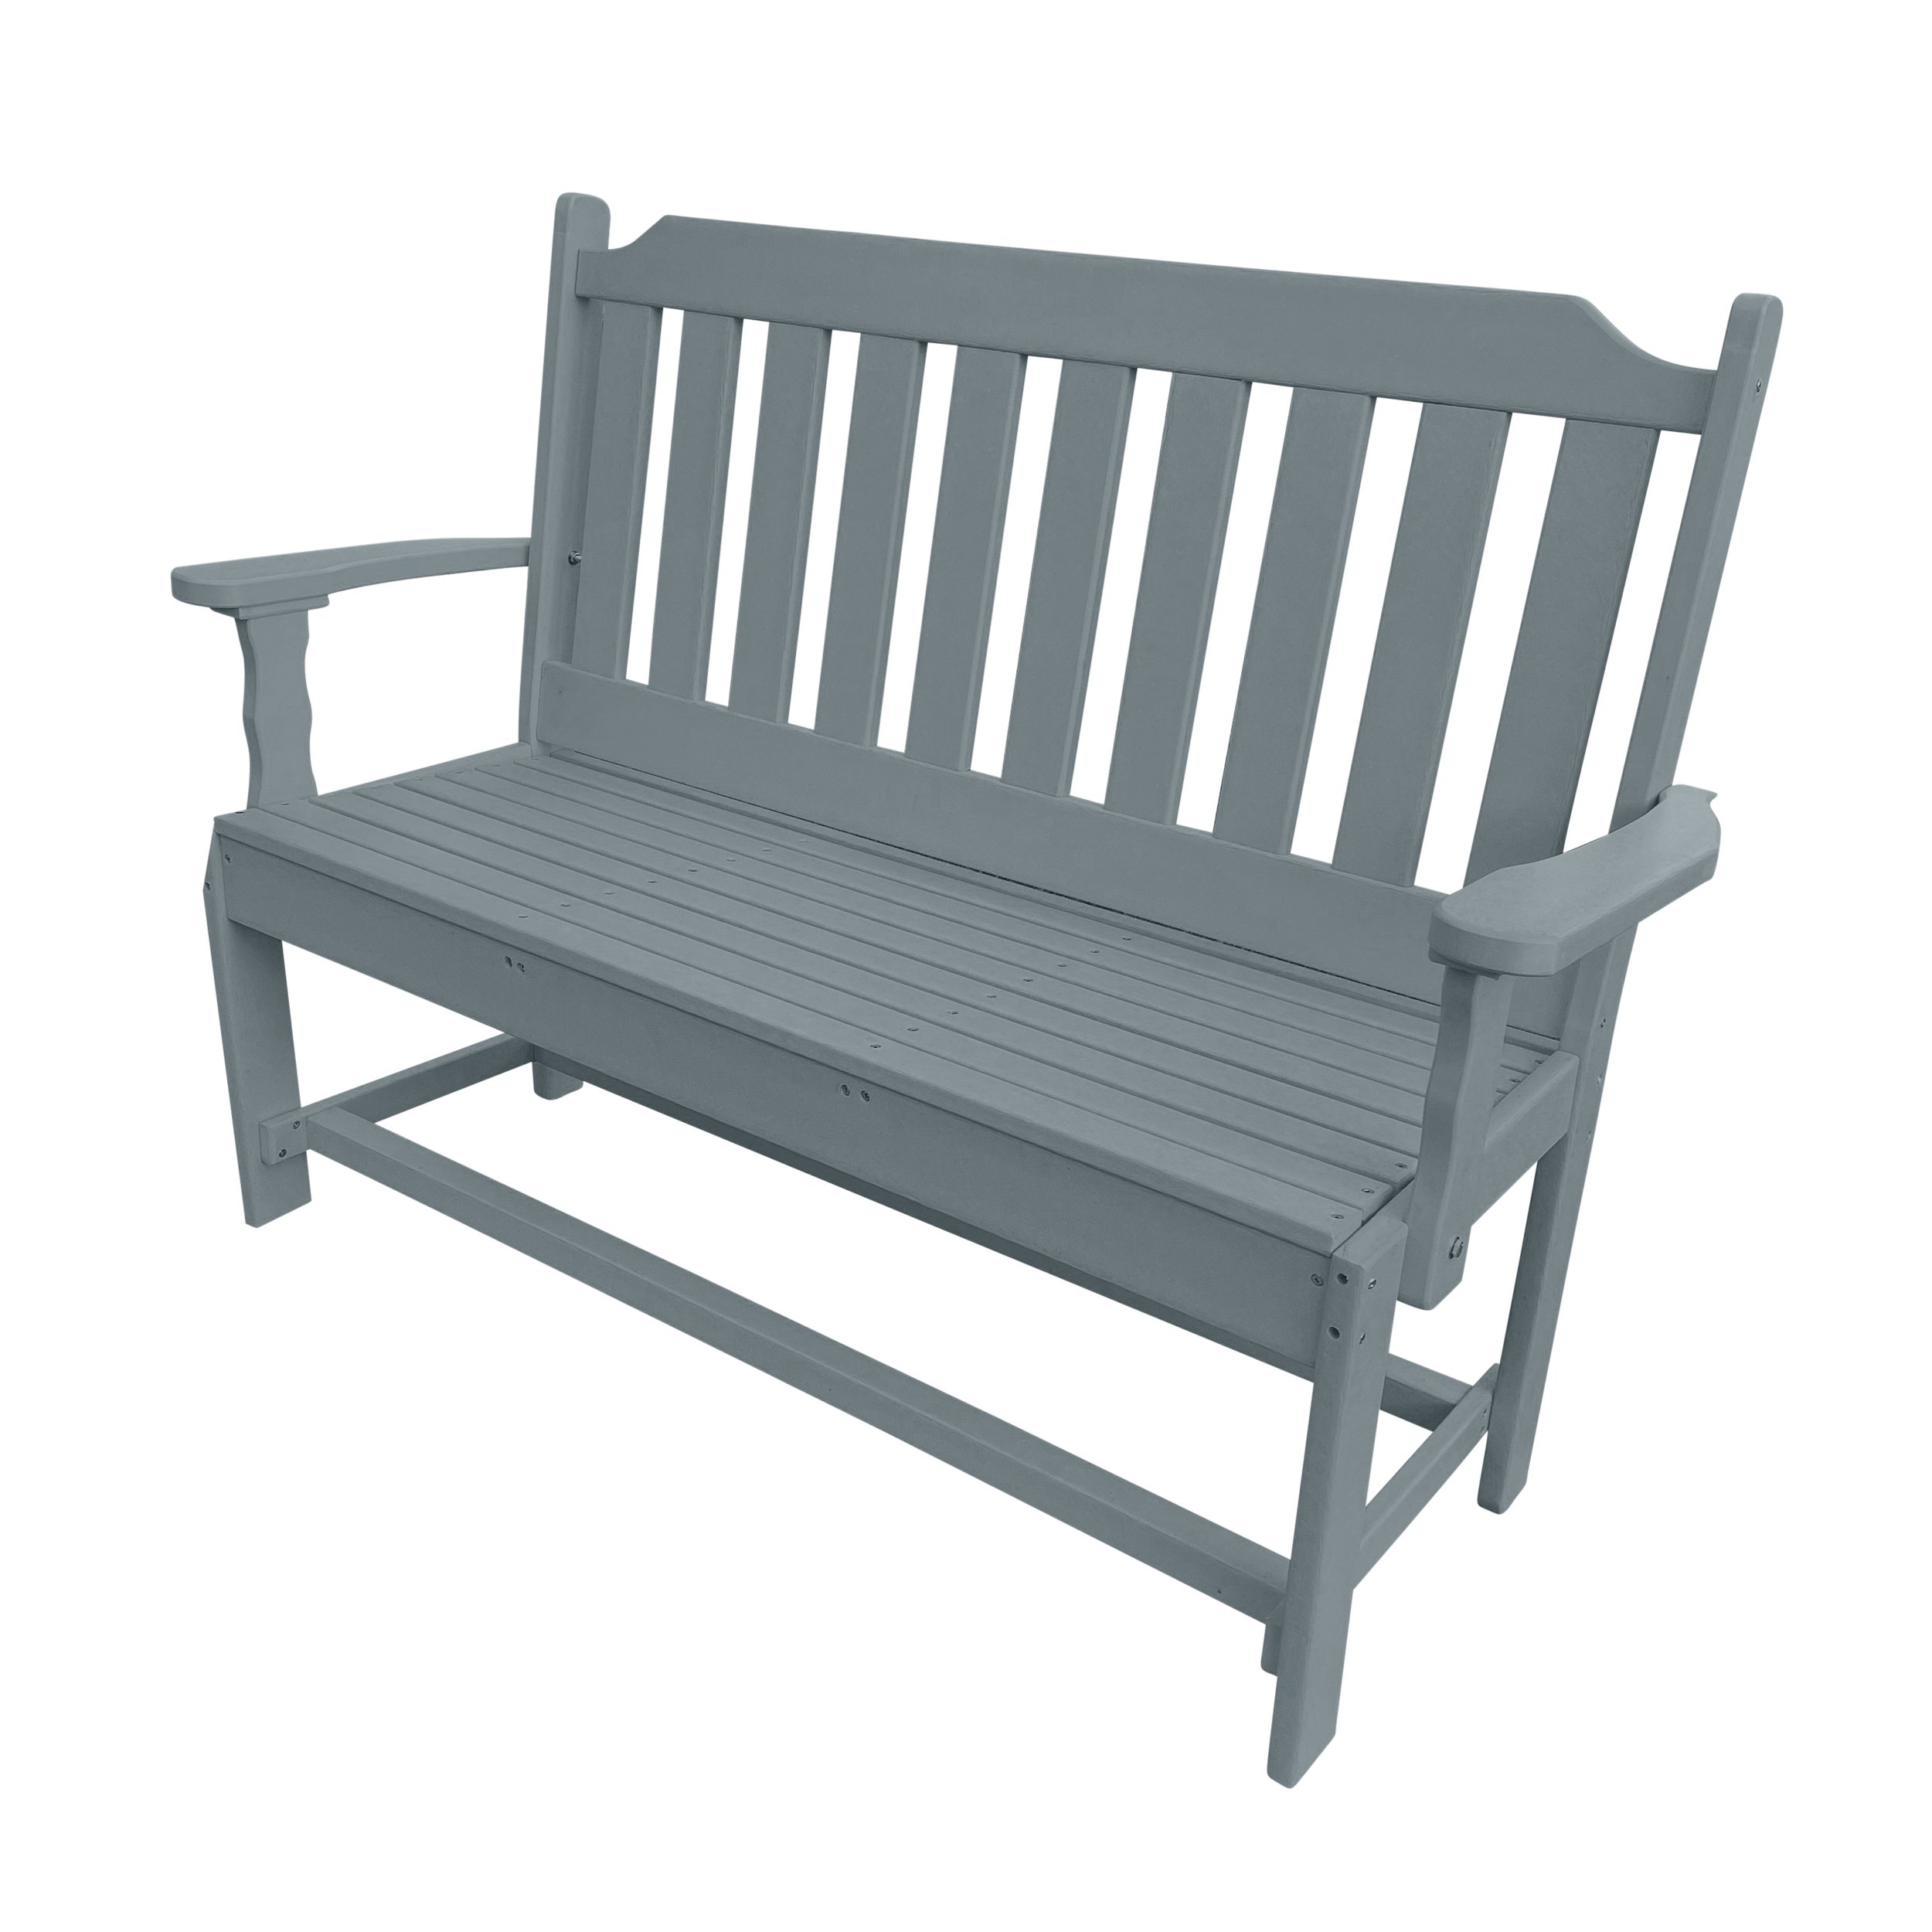 Garden bench | Slate Gray.jpg